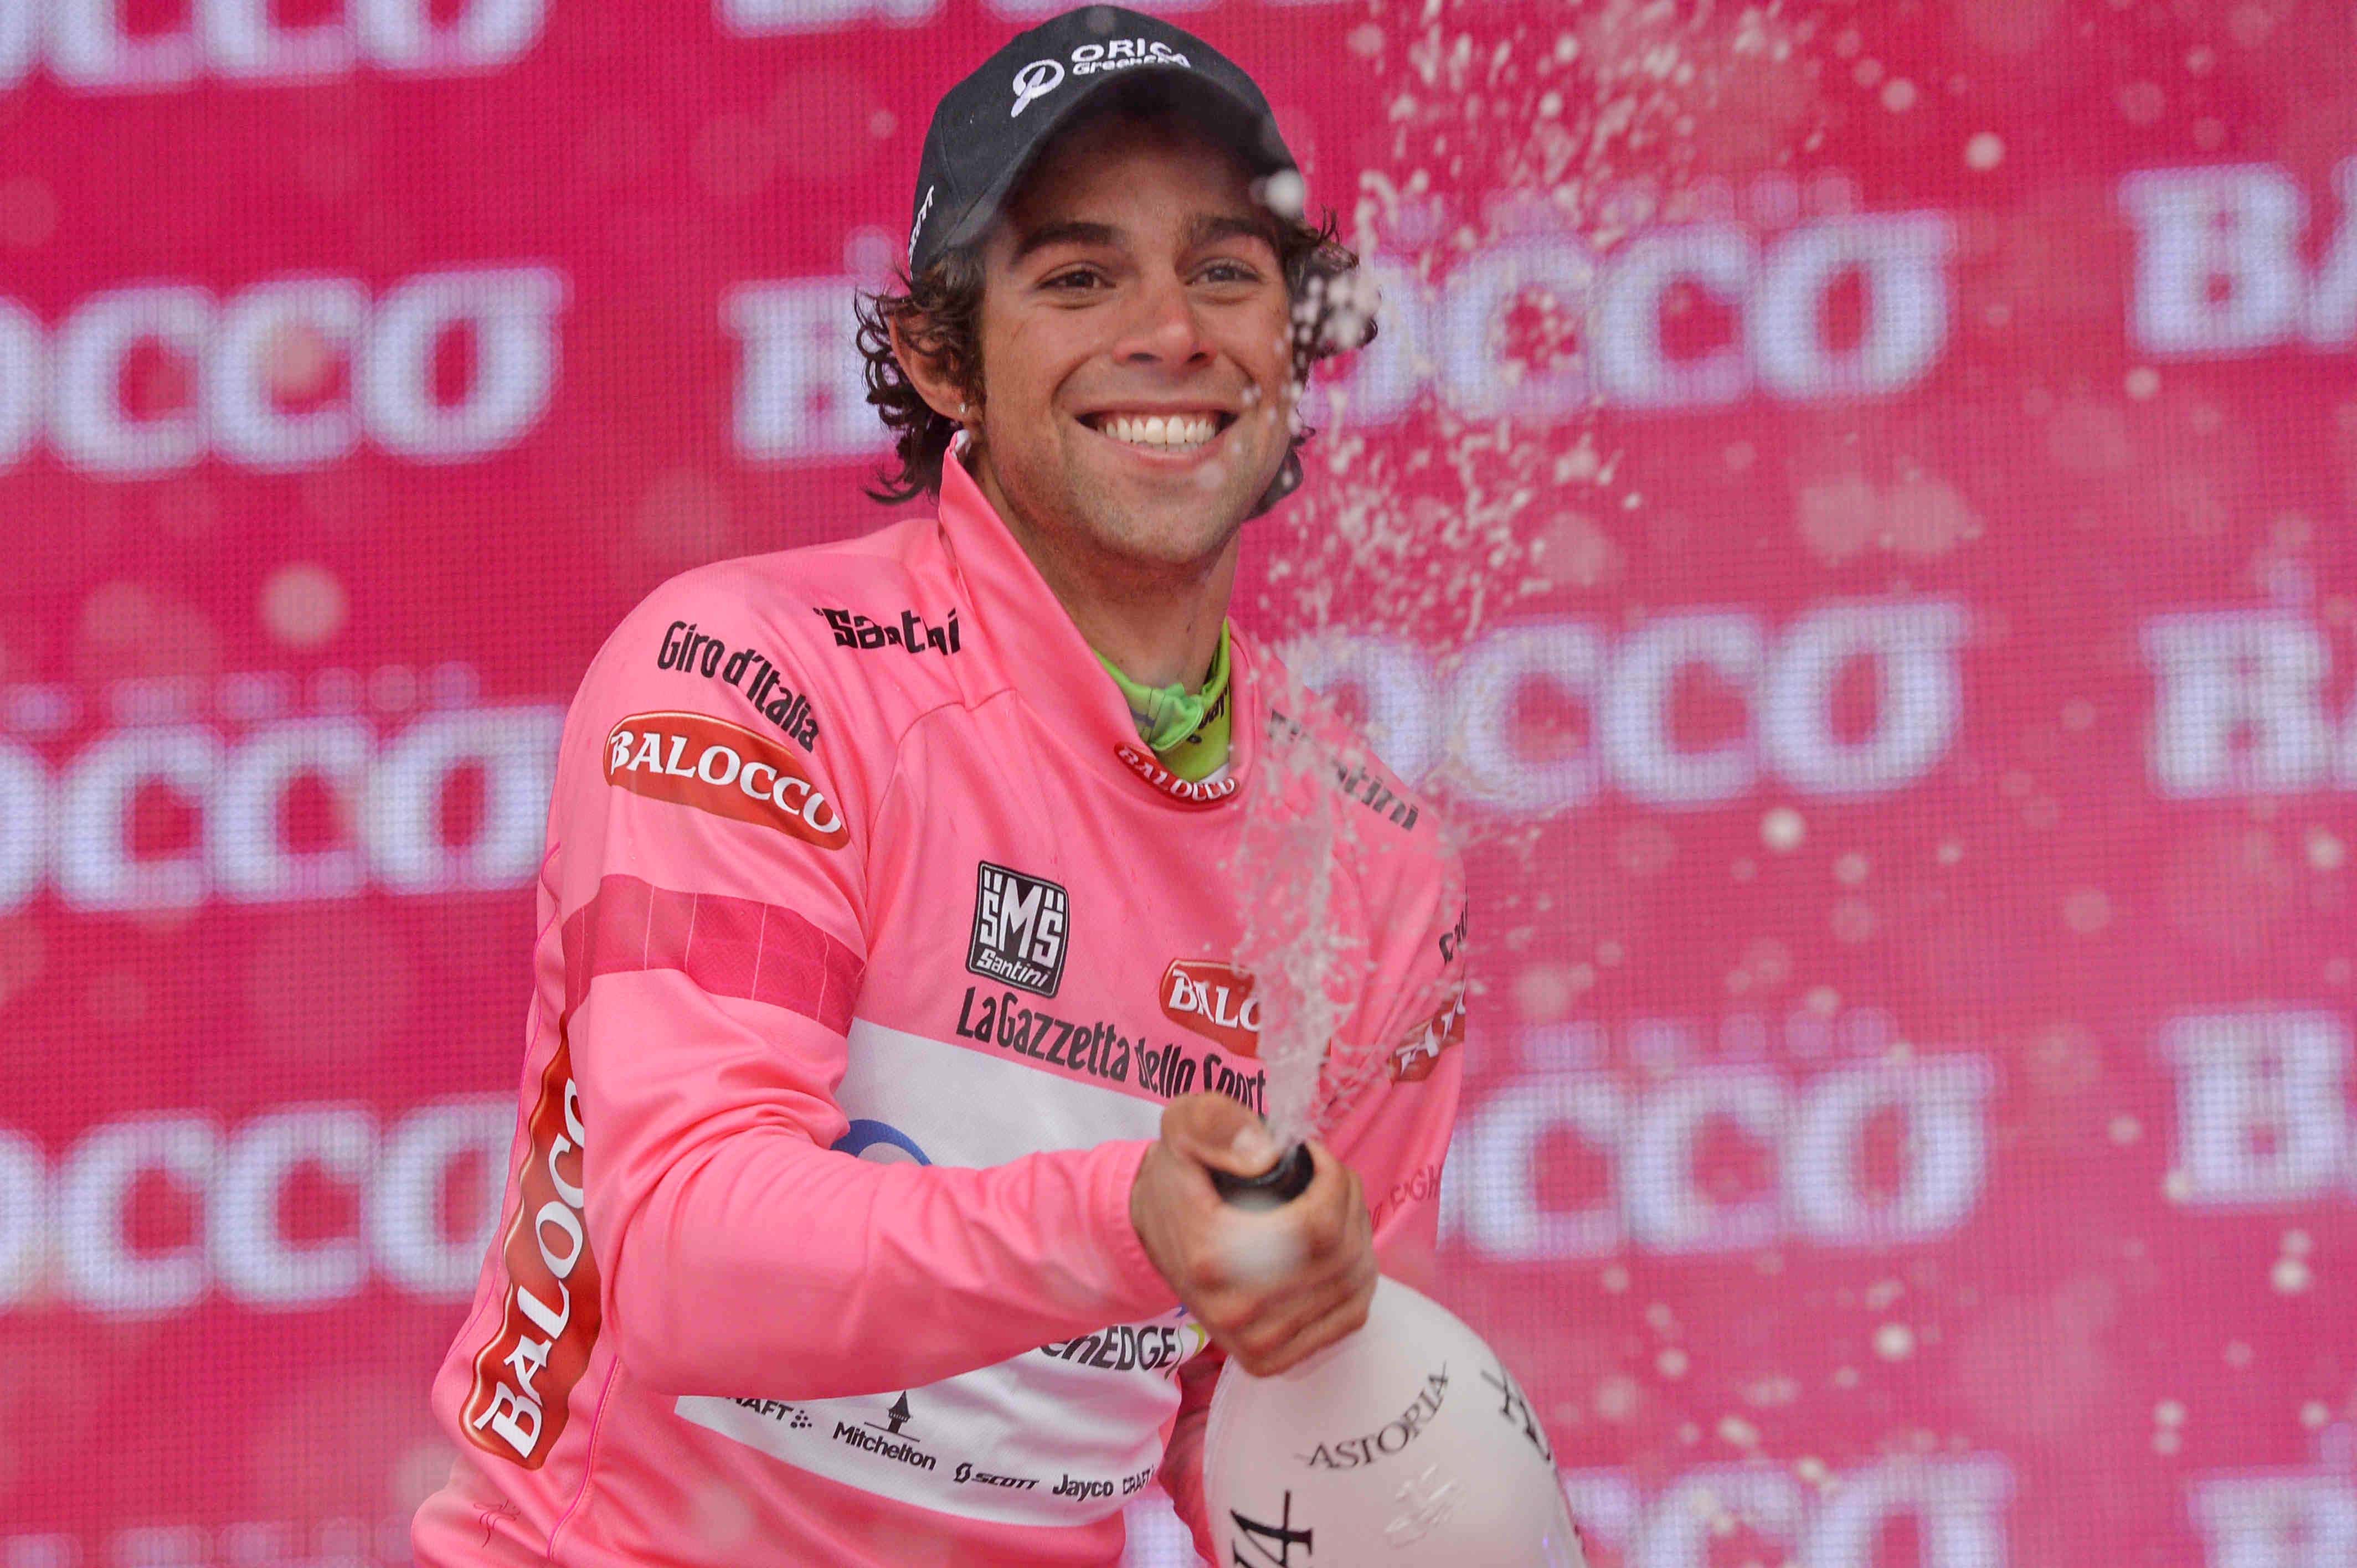 giro d'italia 2014 - 2 tappa - podio maglia rosa - michael matthews